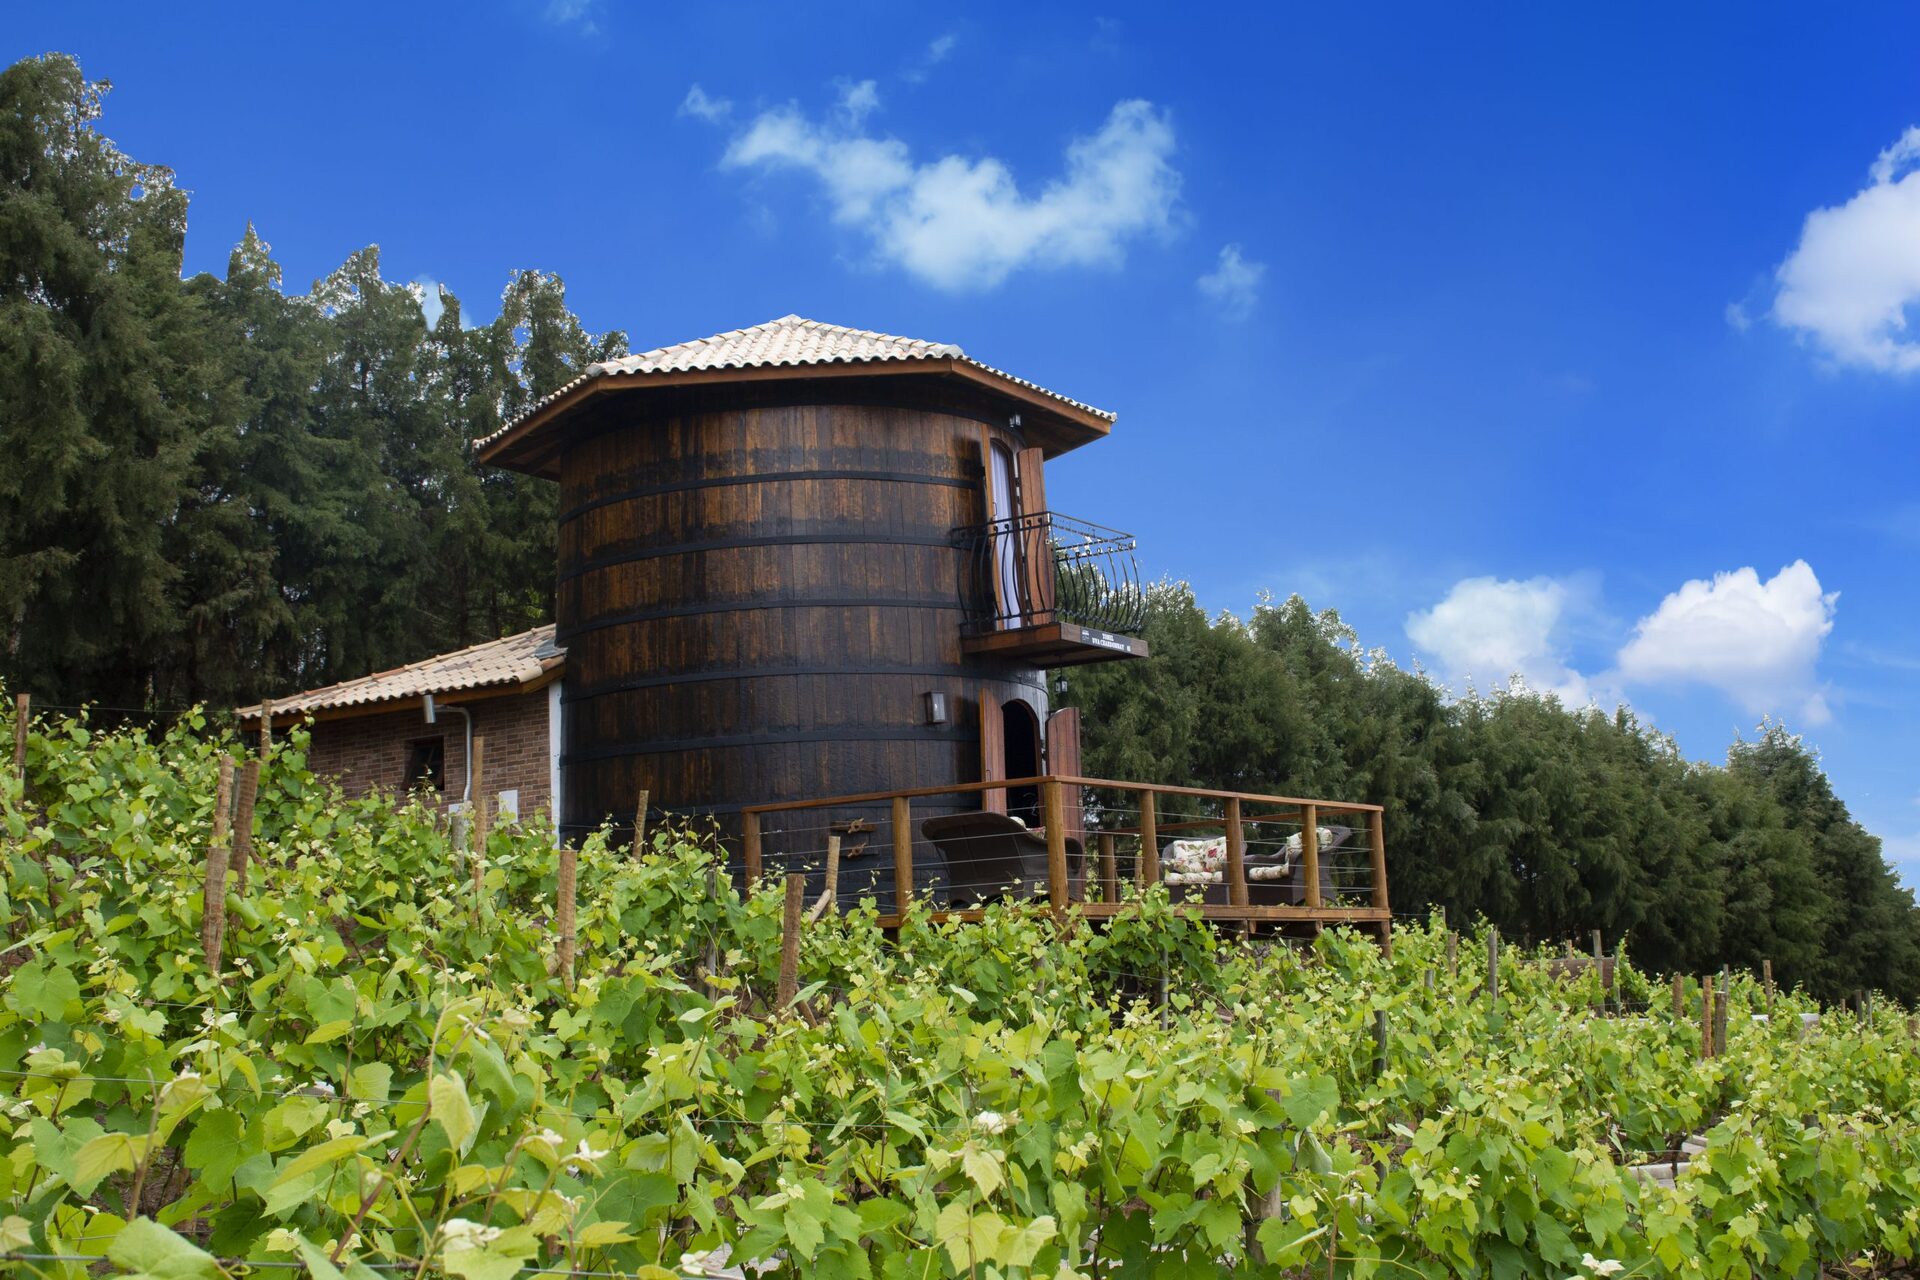 Tonéis de vinho se tornam opção inédita de hospedagem na Quinta do Olivardo